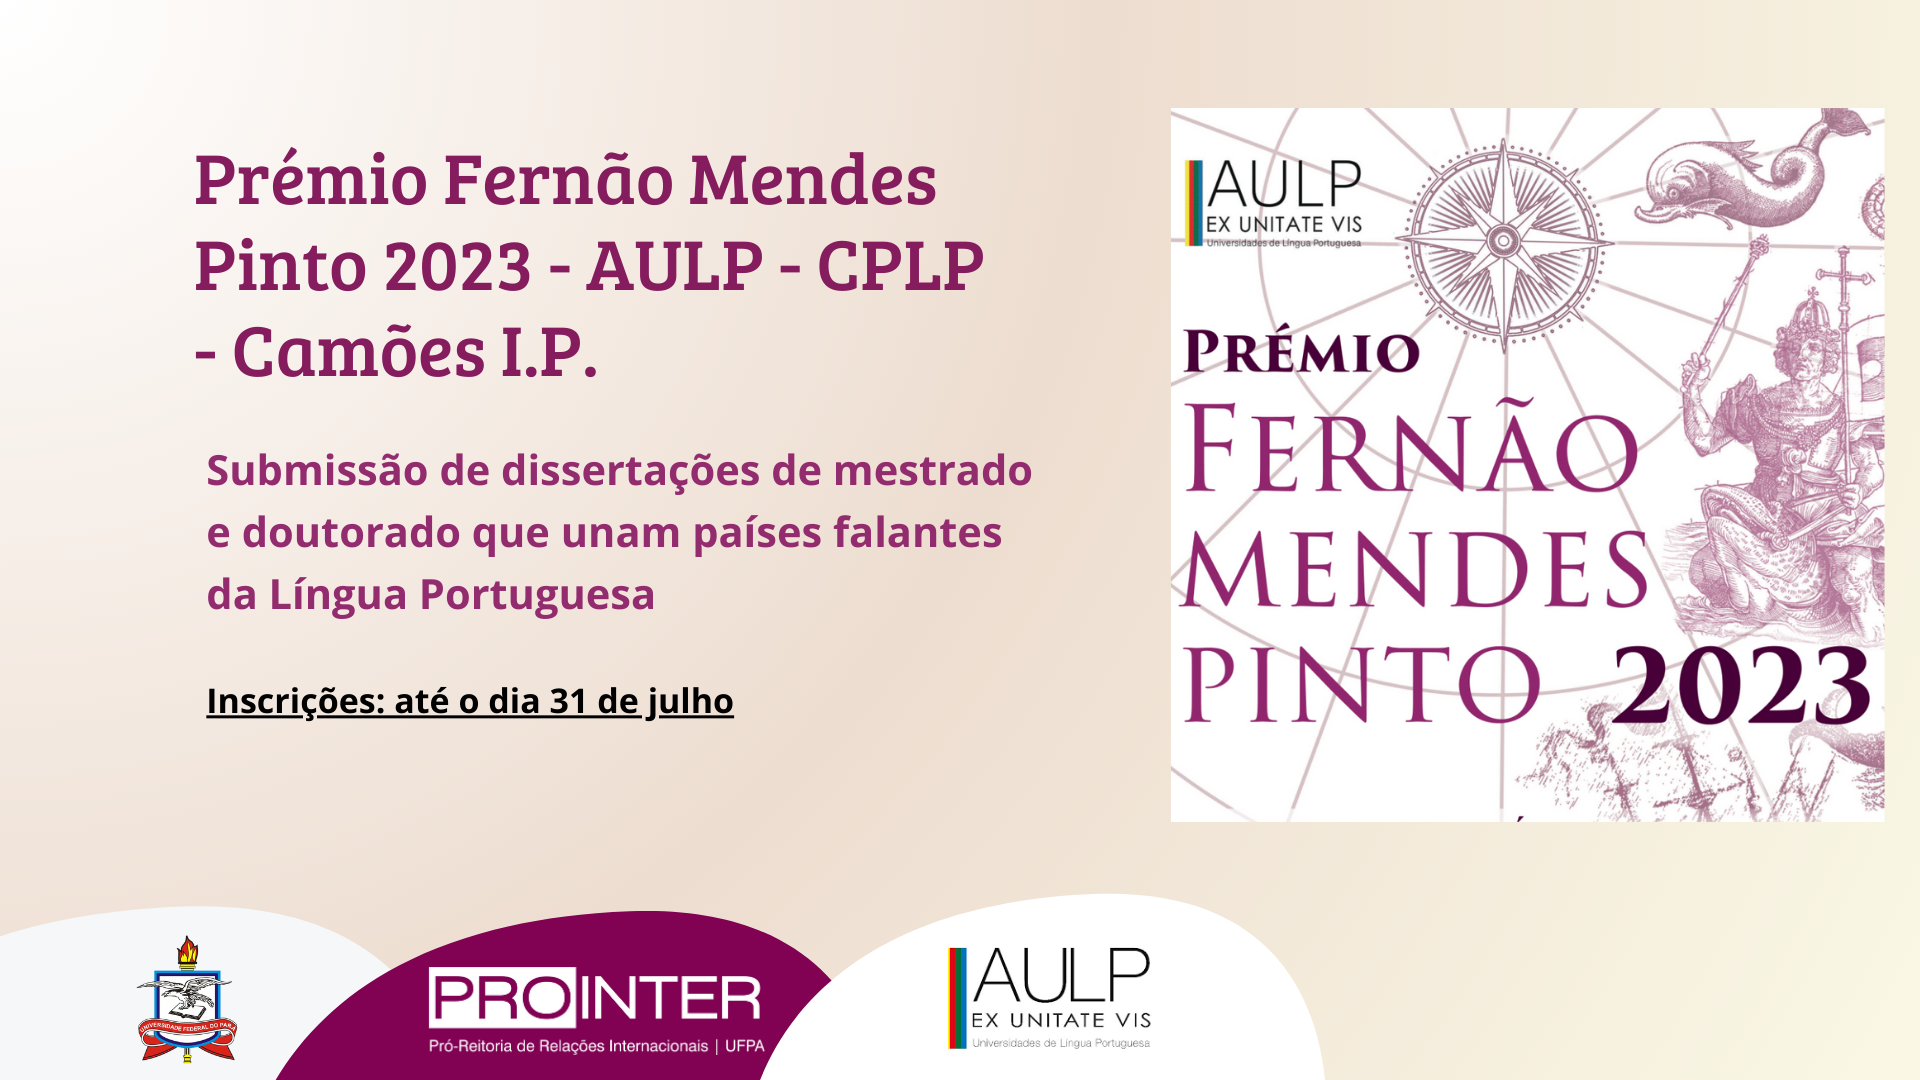 Prêmio Fernão Mendes Pinto 2023 - AULP - CPLP - Camões I.P.